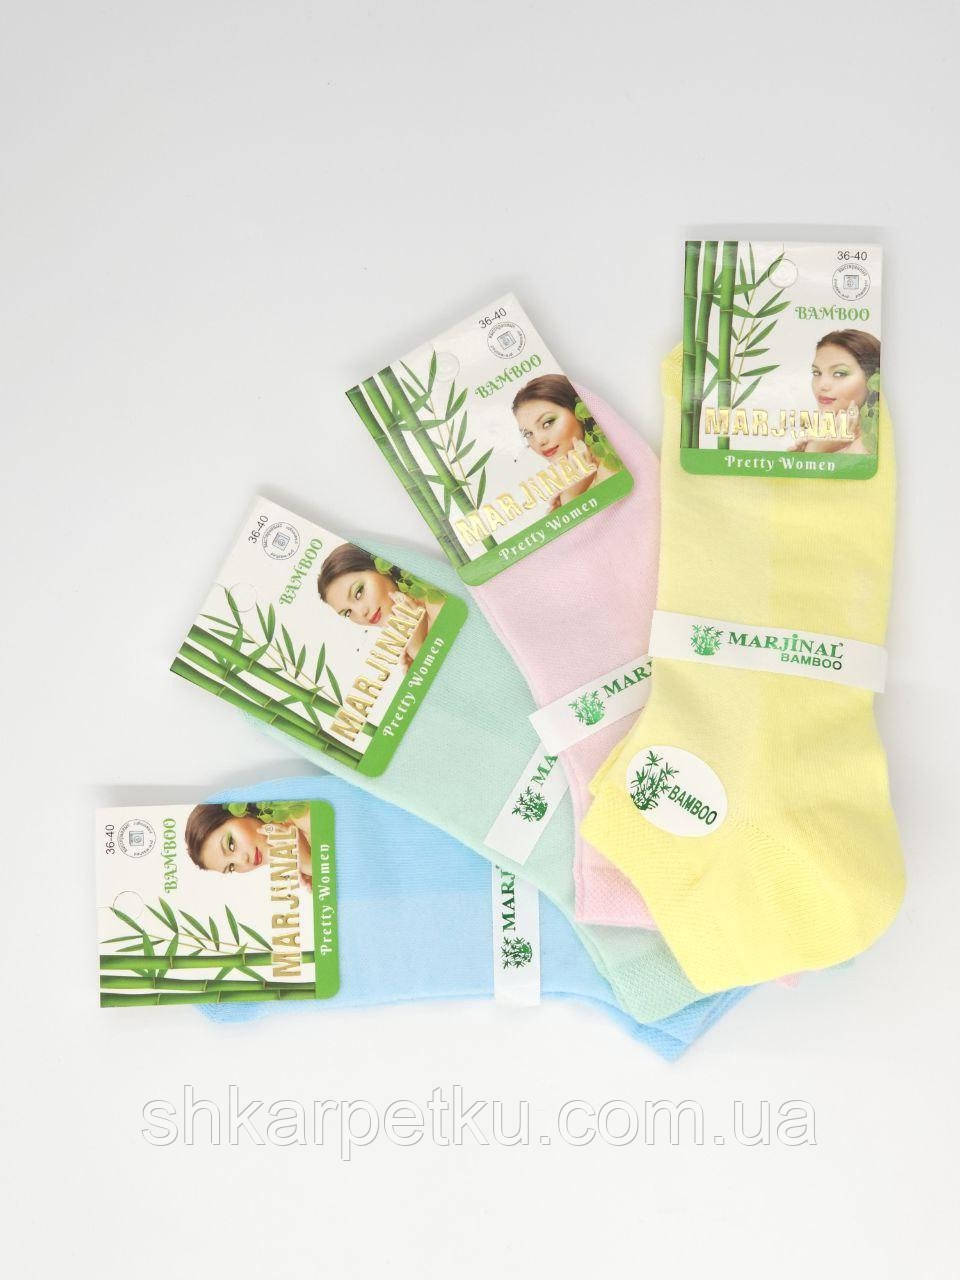 Жіночі шкарпетки стрейчеві Marjinal пастельне асорті бамбук сітка короткі розмір 36-40 12 пар/уп